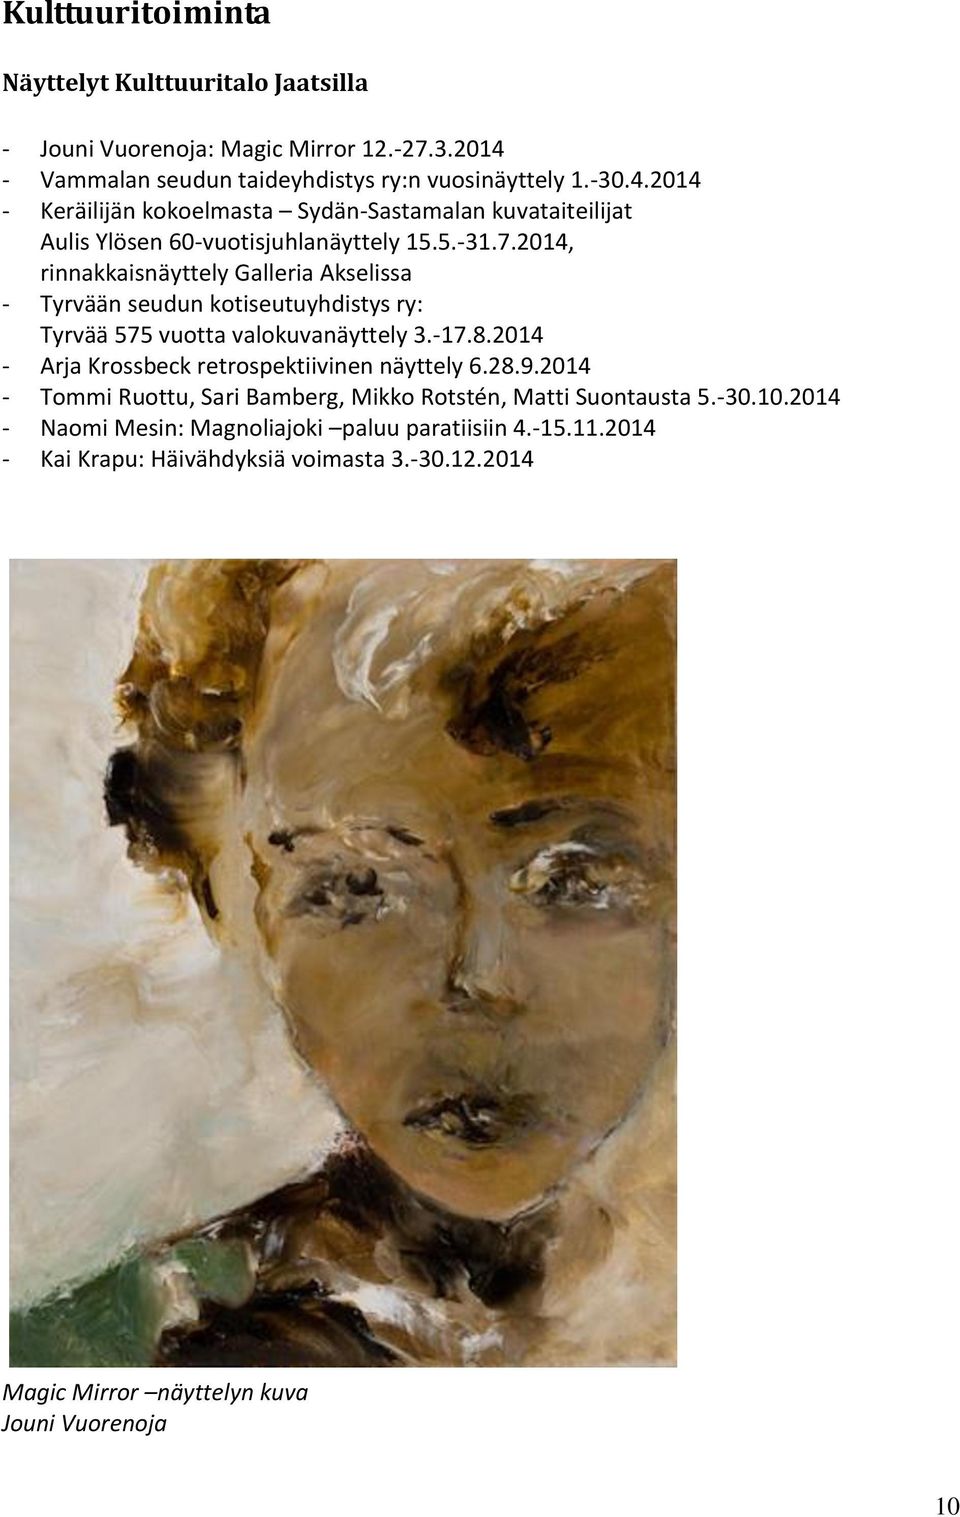 2014, rinnakkaisnäyttely Galleria Akselissa - Tyrvään seudun kotiseutuyhdistys ry: Tyrvää 575 vuotta valokuvanäyttely 3.-17.8.